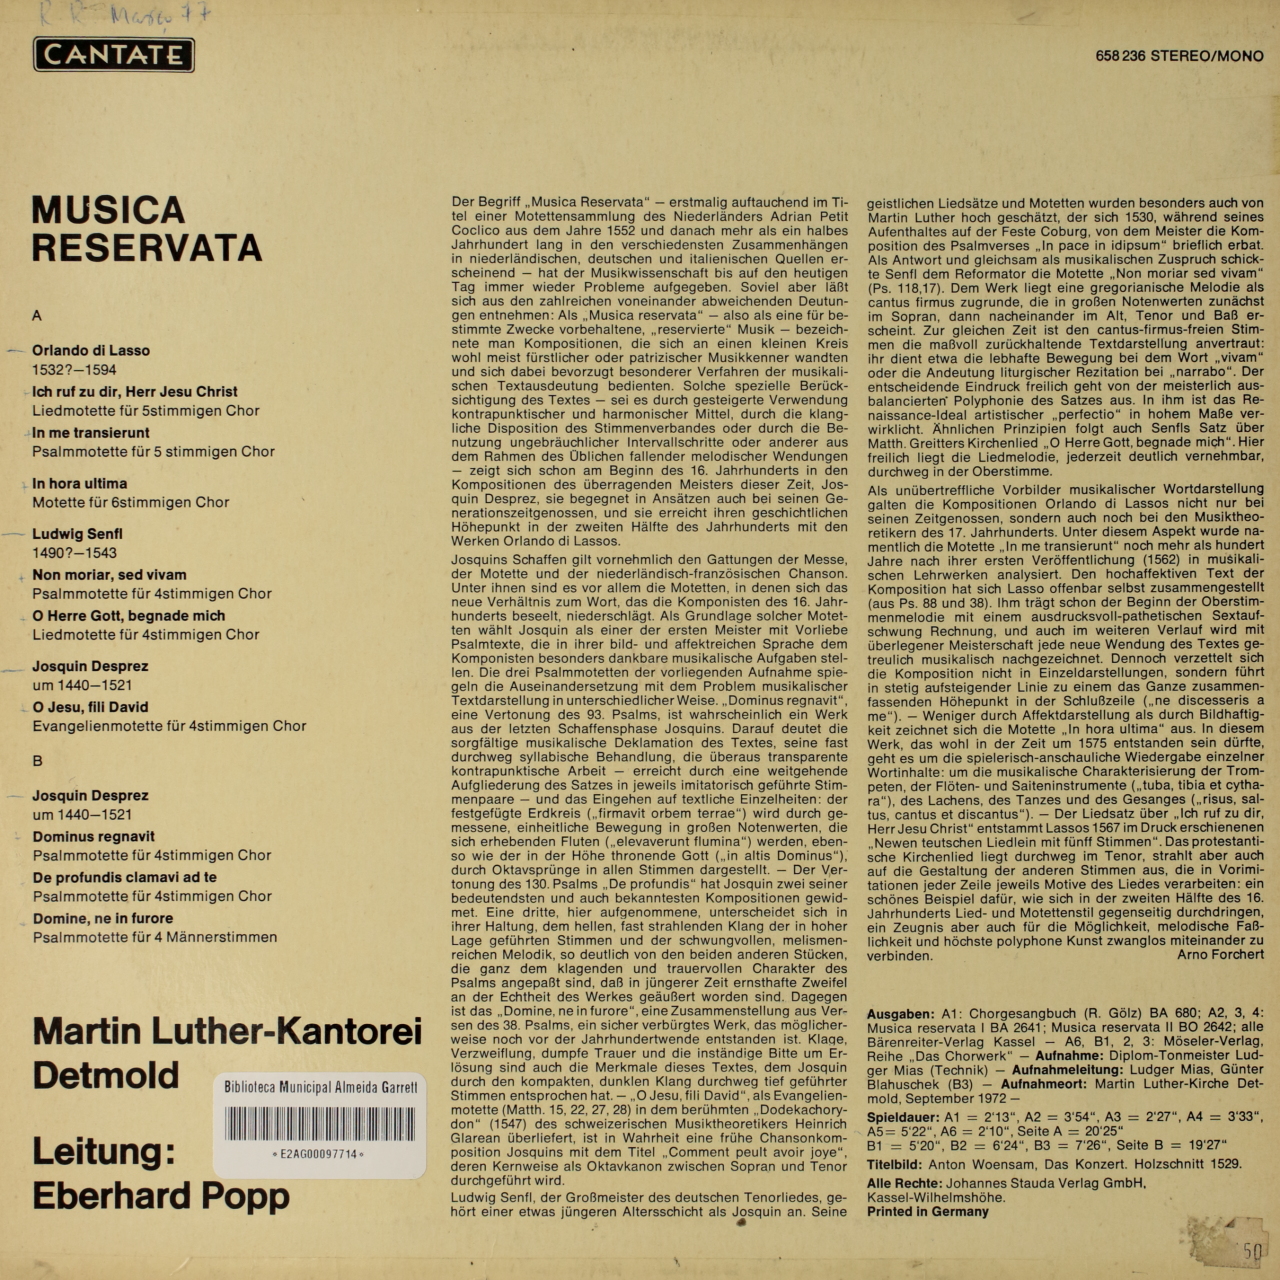 Musica Reservata - Motetten von Orlando di Lasso, Ludwig Sefl, Josquin Desprez